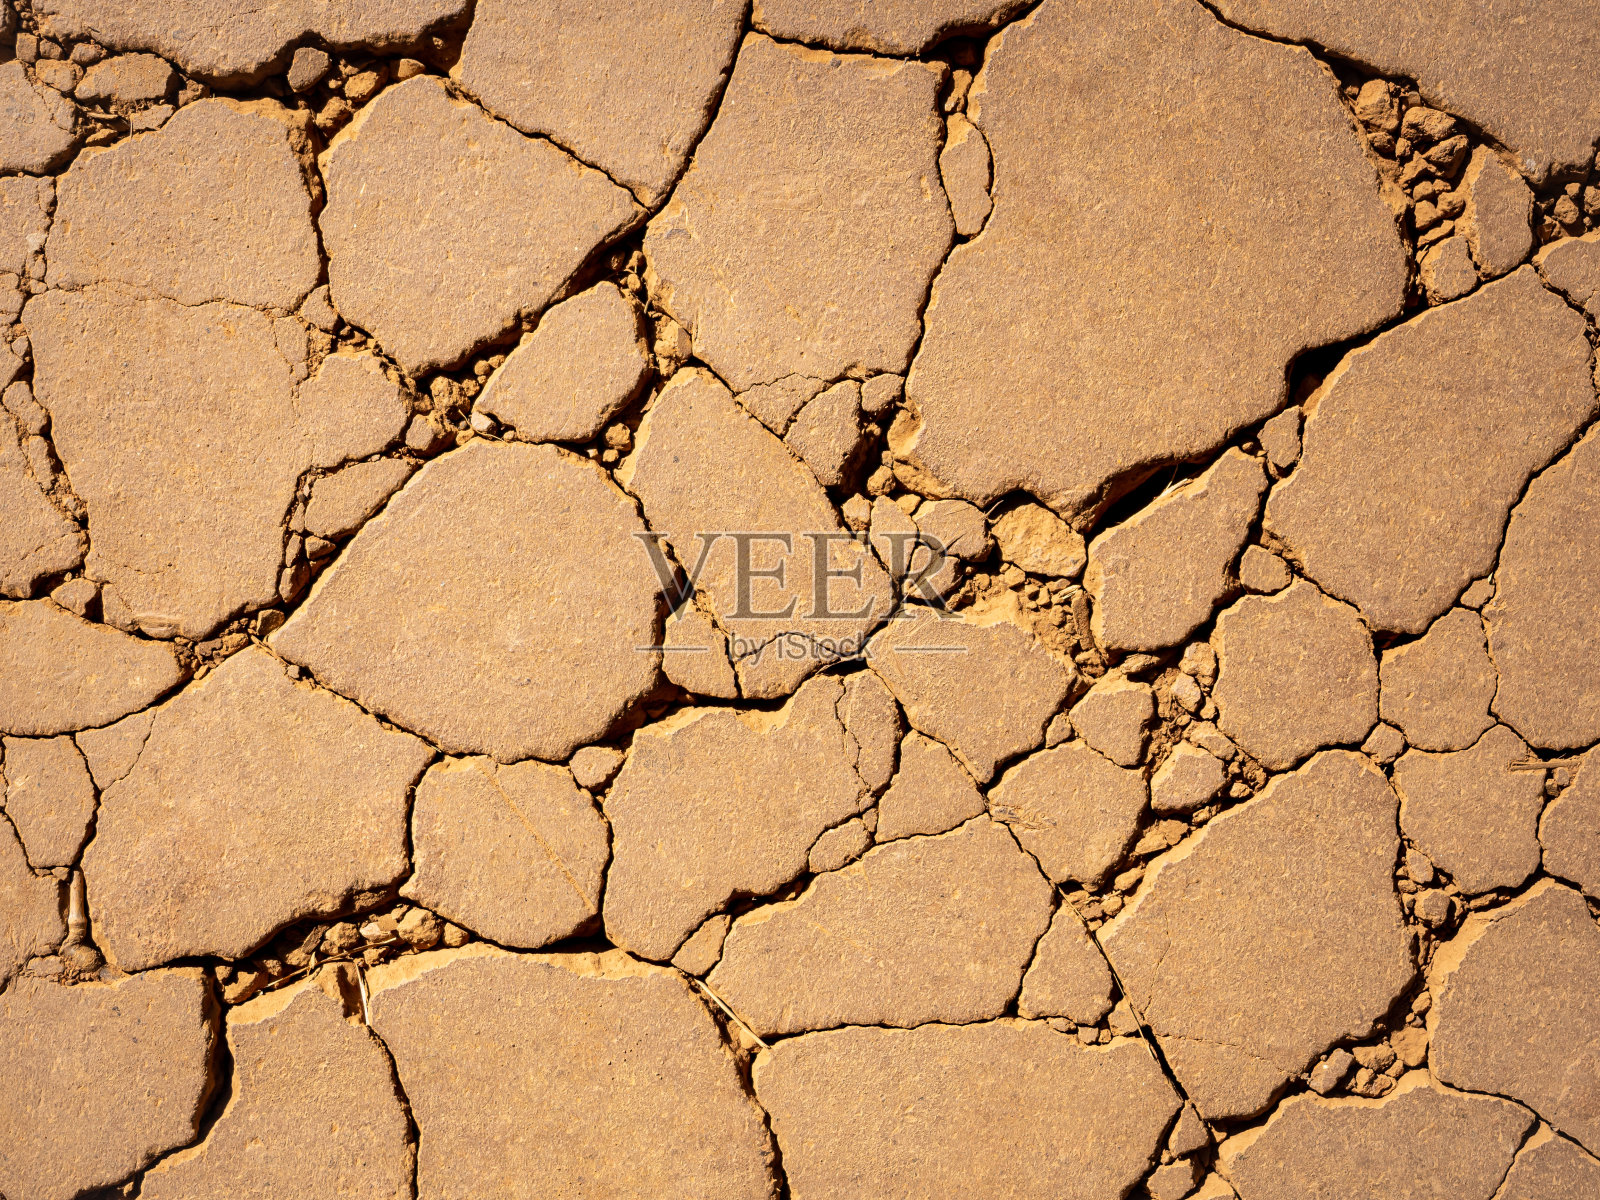 干裂土是干旱土壤环境照片摄影图片